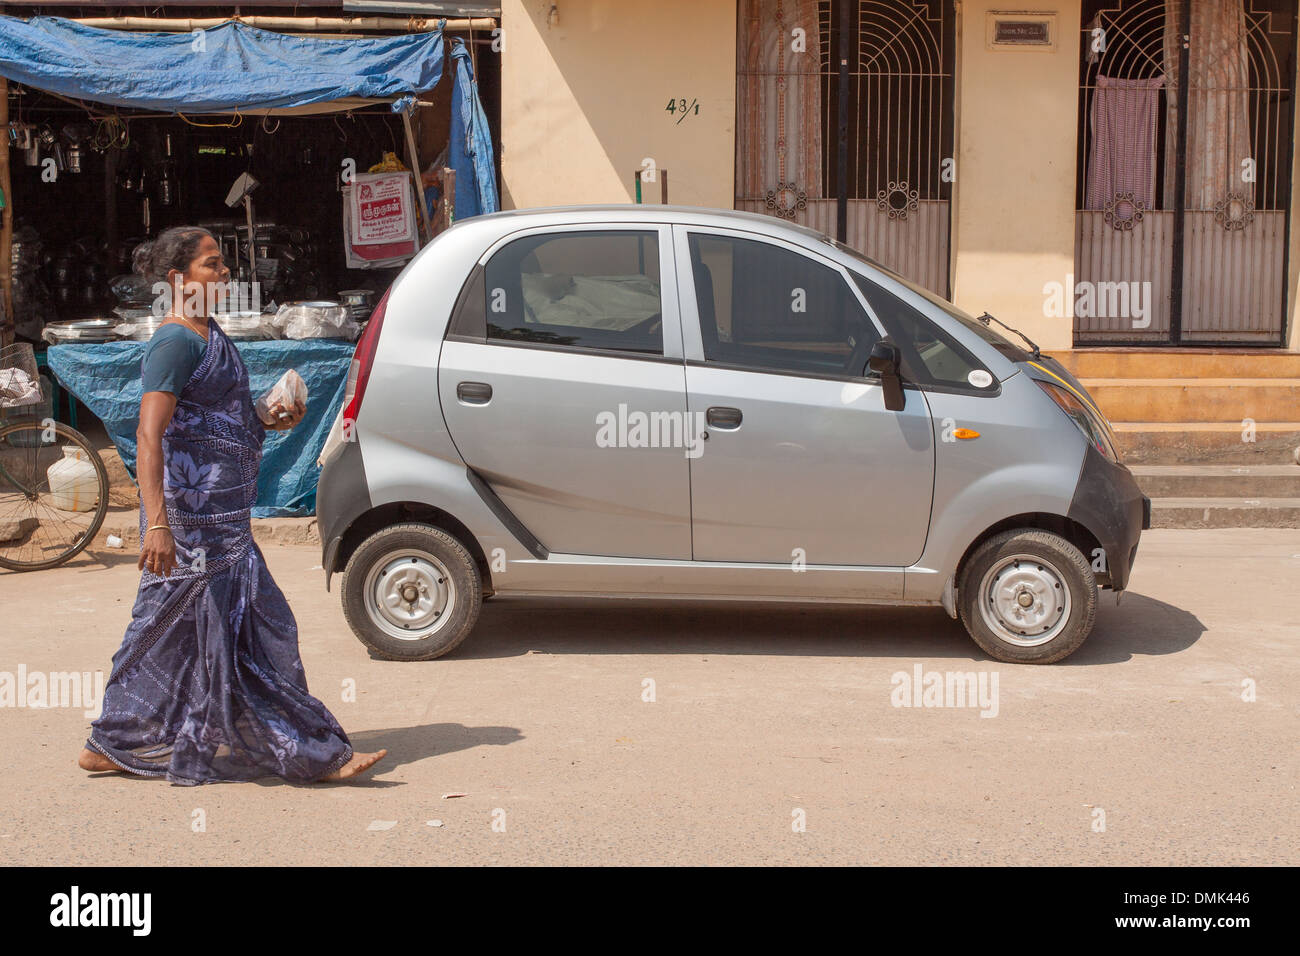 Donna indiana vestito in un tradizionale sari passando davanti ad una TATA NANO CAR, il contrasto tra la tradizione e modernità, Madurai, stato del Tamil Nadu, IINDIA Foto Stock